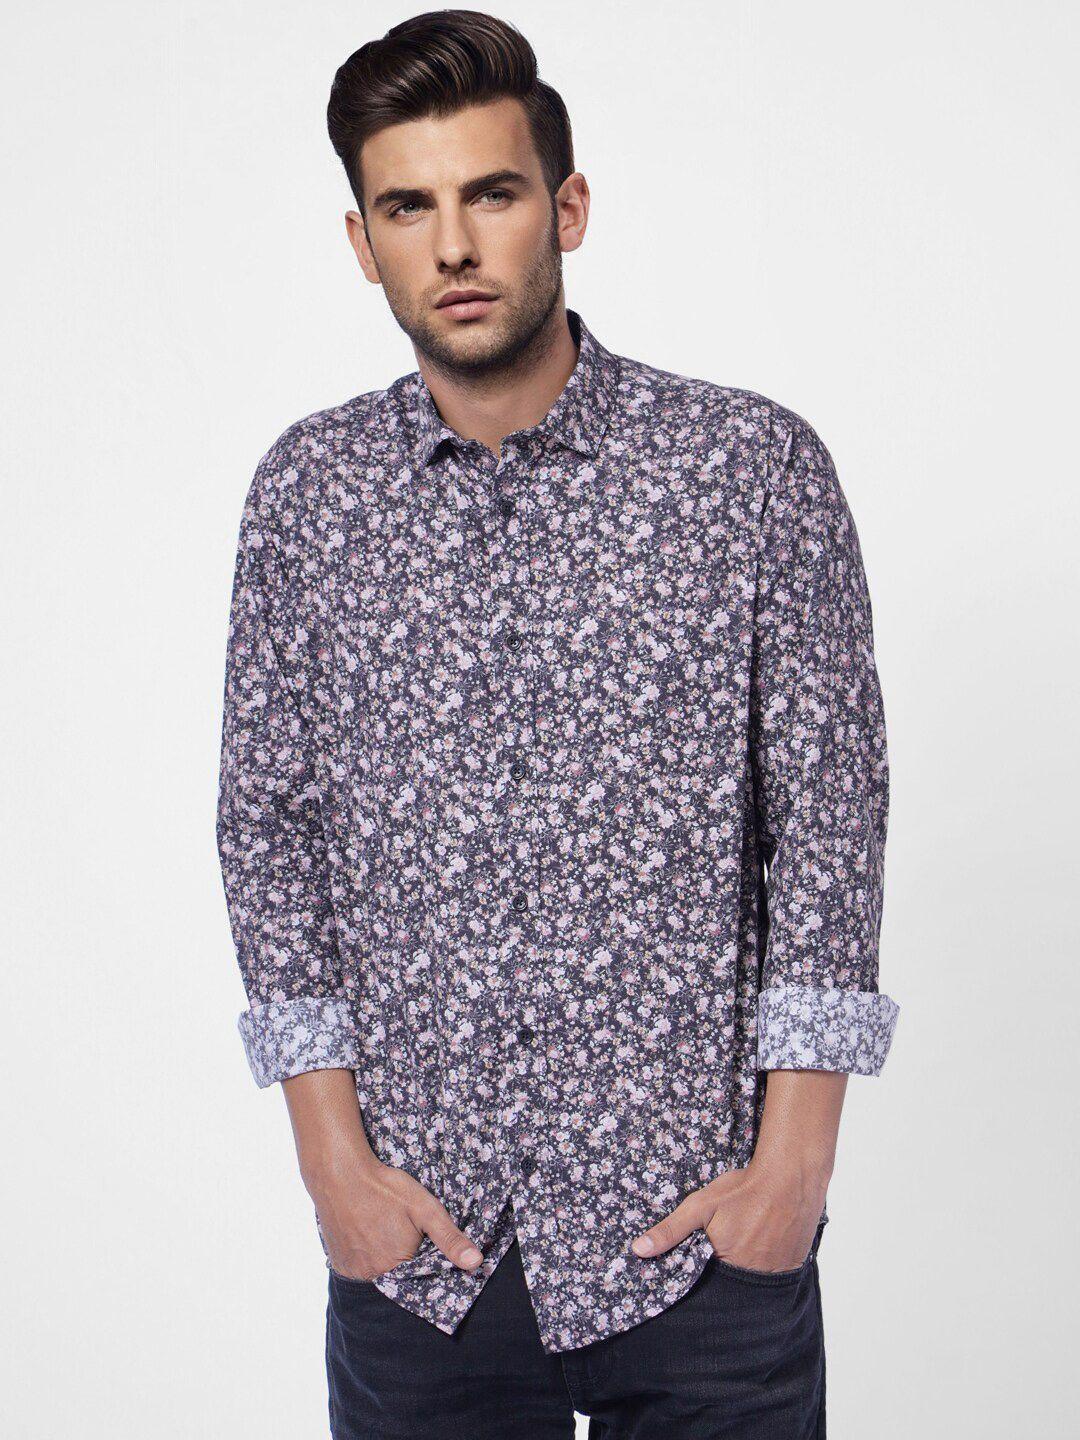 jack & jones men mauve floral printed cotton casual shirt